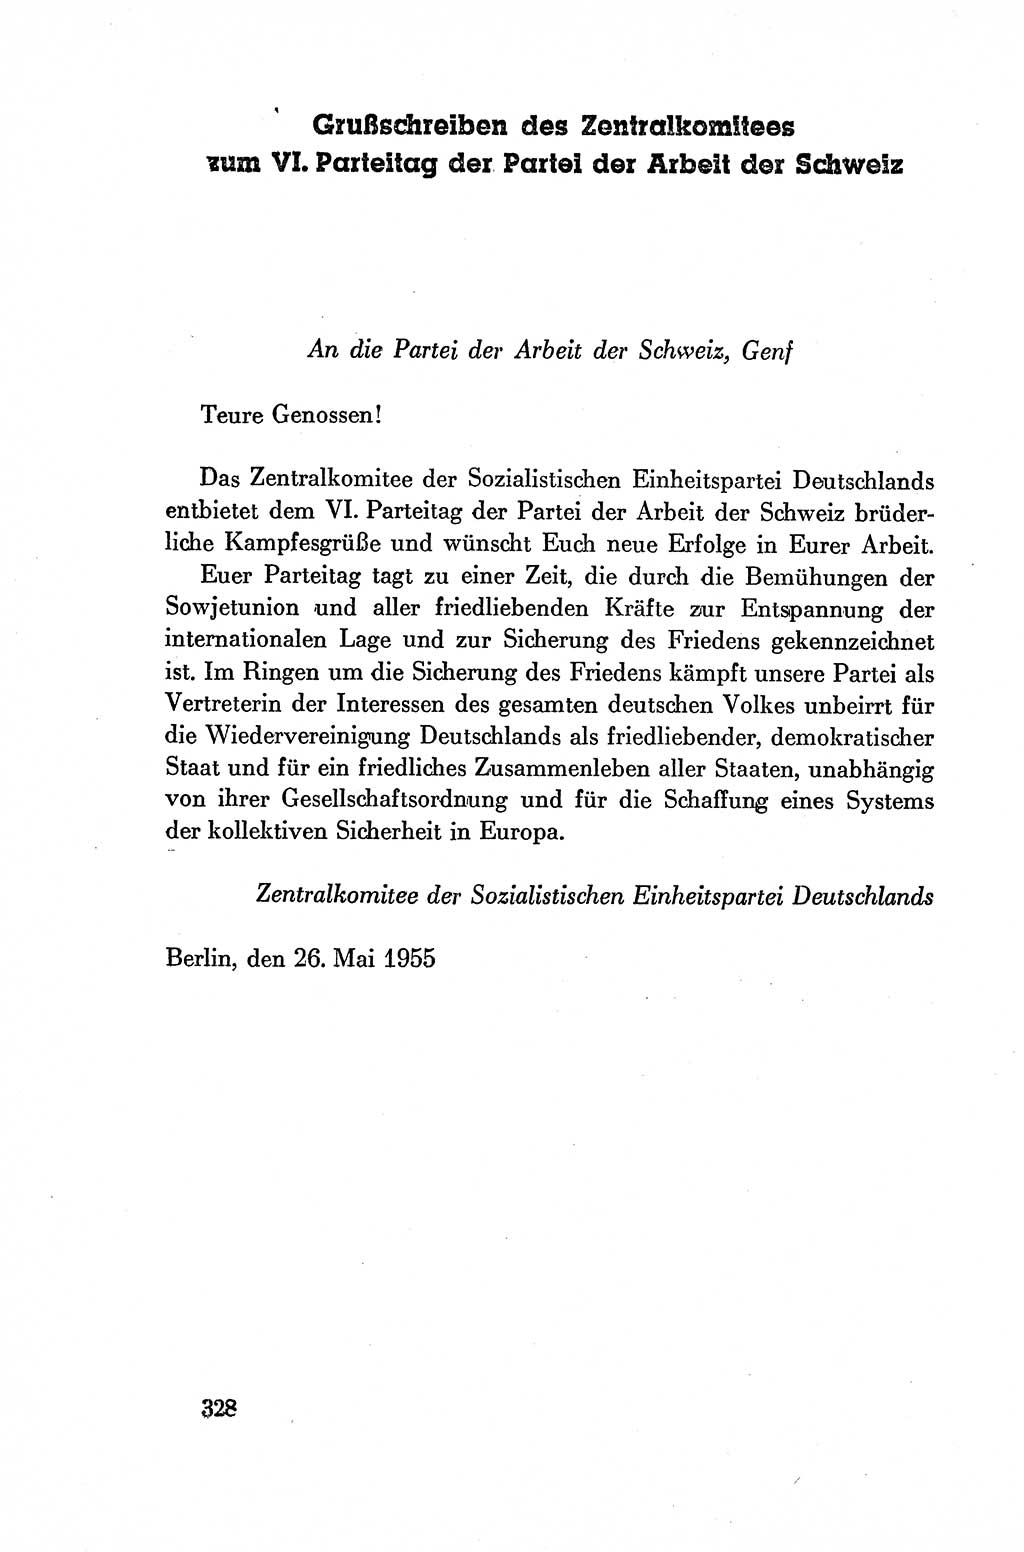 Dokumente der Sozialistischen Einheitspartei Deutschlands (SED) [Deutsche Demokratische Republik (DDR)] 1954-1955, Seite 328 (Dok. SED DDR 1954-1955, S. 328)